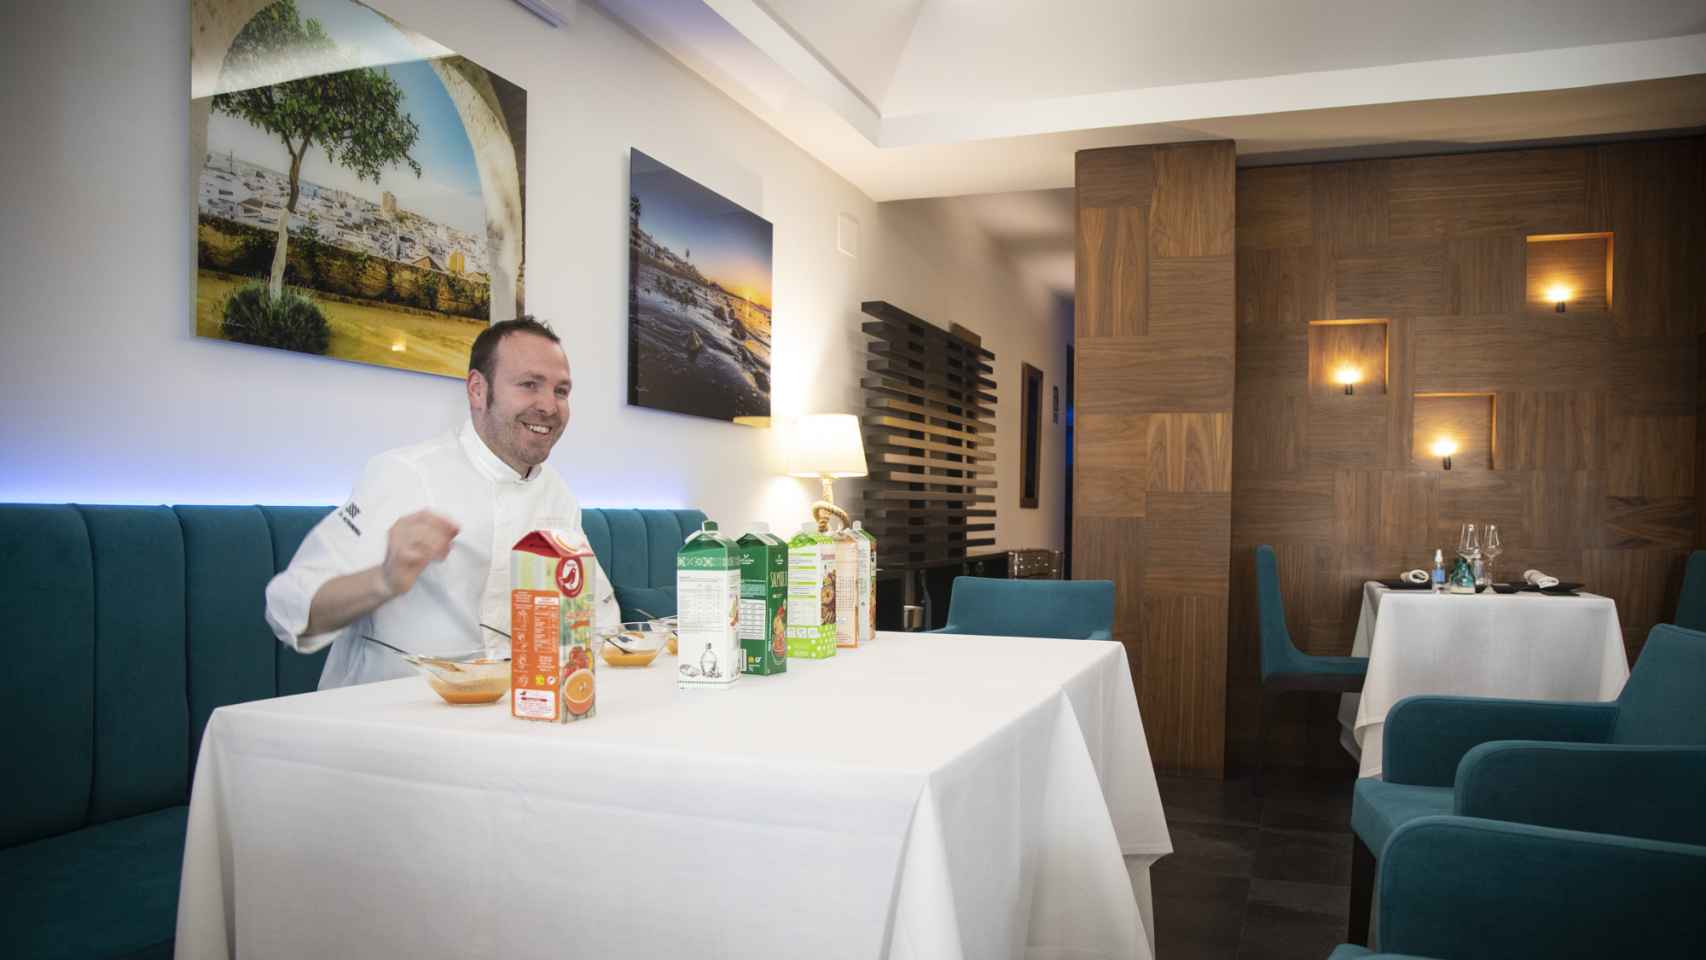 El cocinero andaluz, Jose Calleja, analiza seis salmorejos de las marcas blancas de los supermercados en Surtopía, su restaurante.